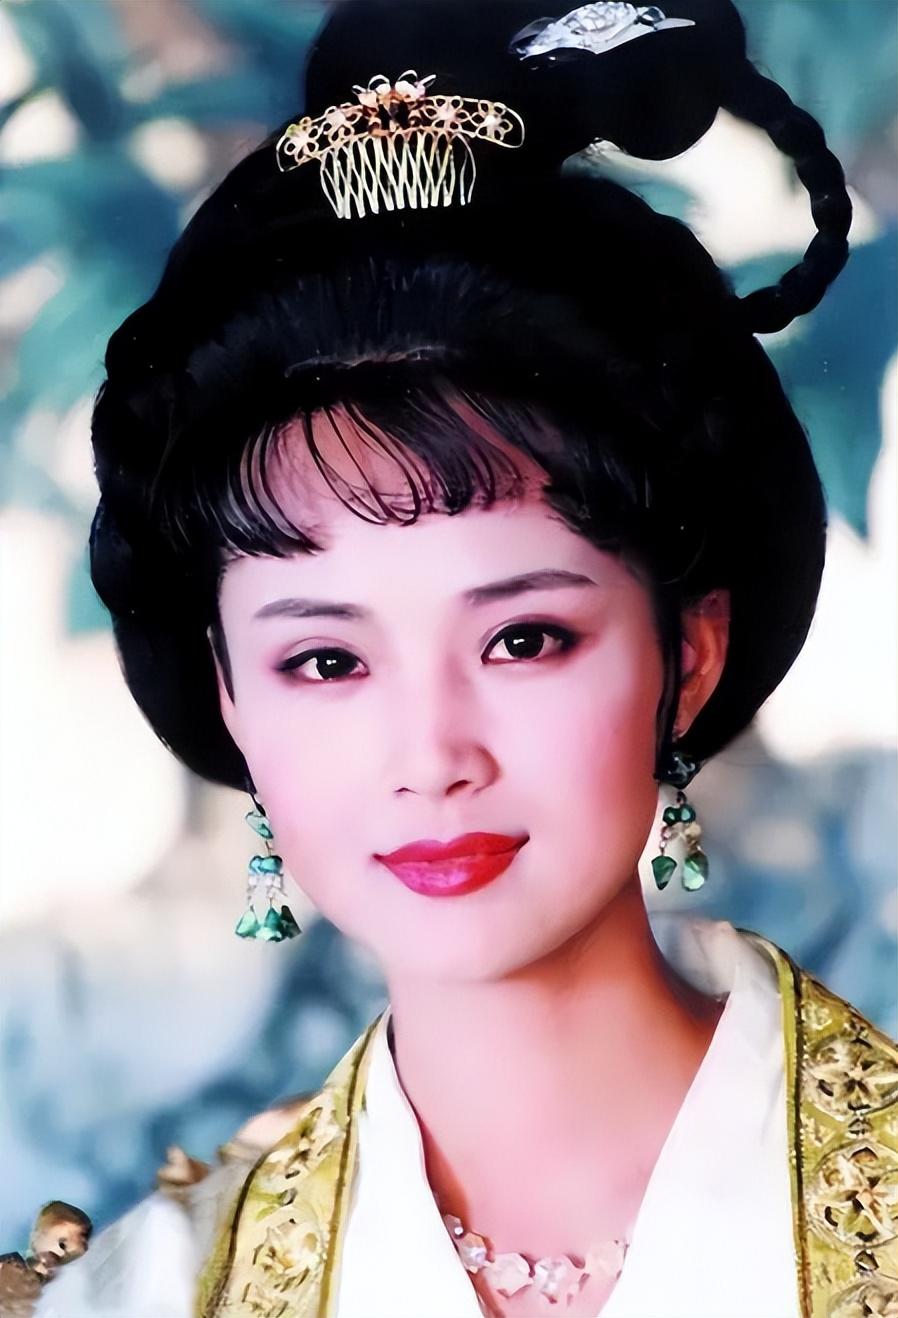 茹萍也是一名演员出演过电视剧《武则天》里面的上官婉儿